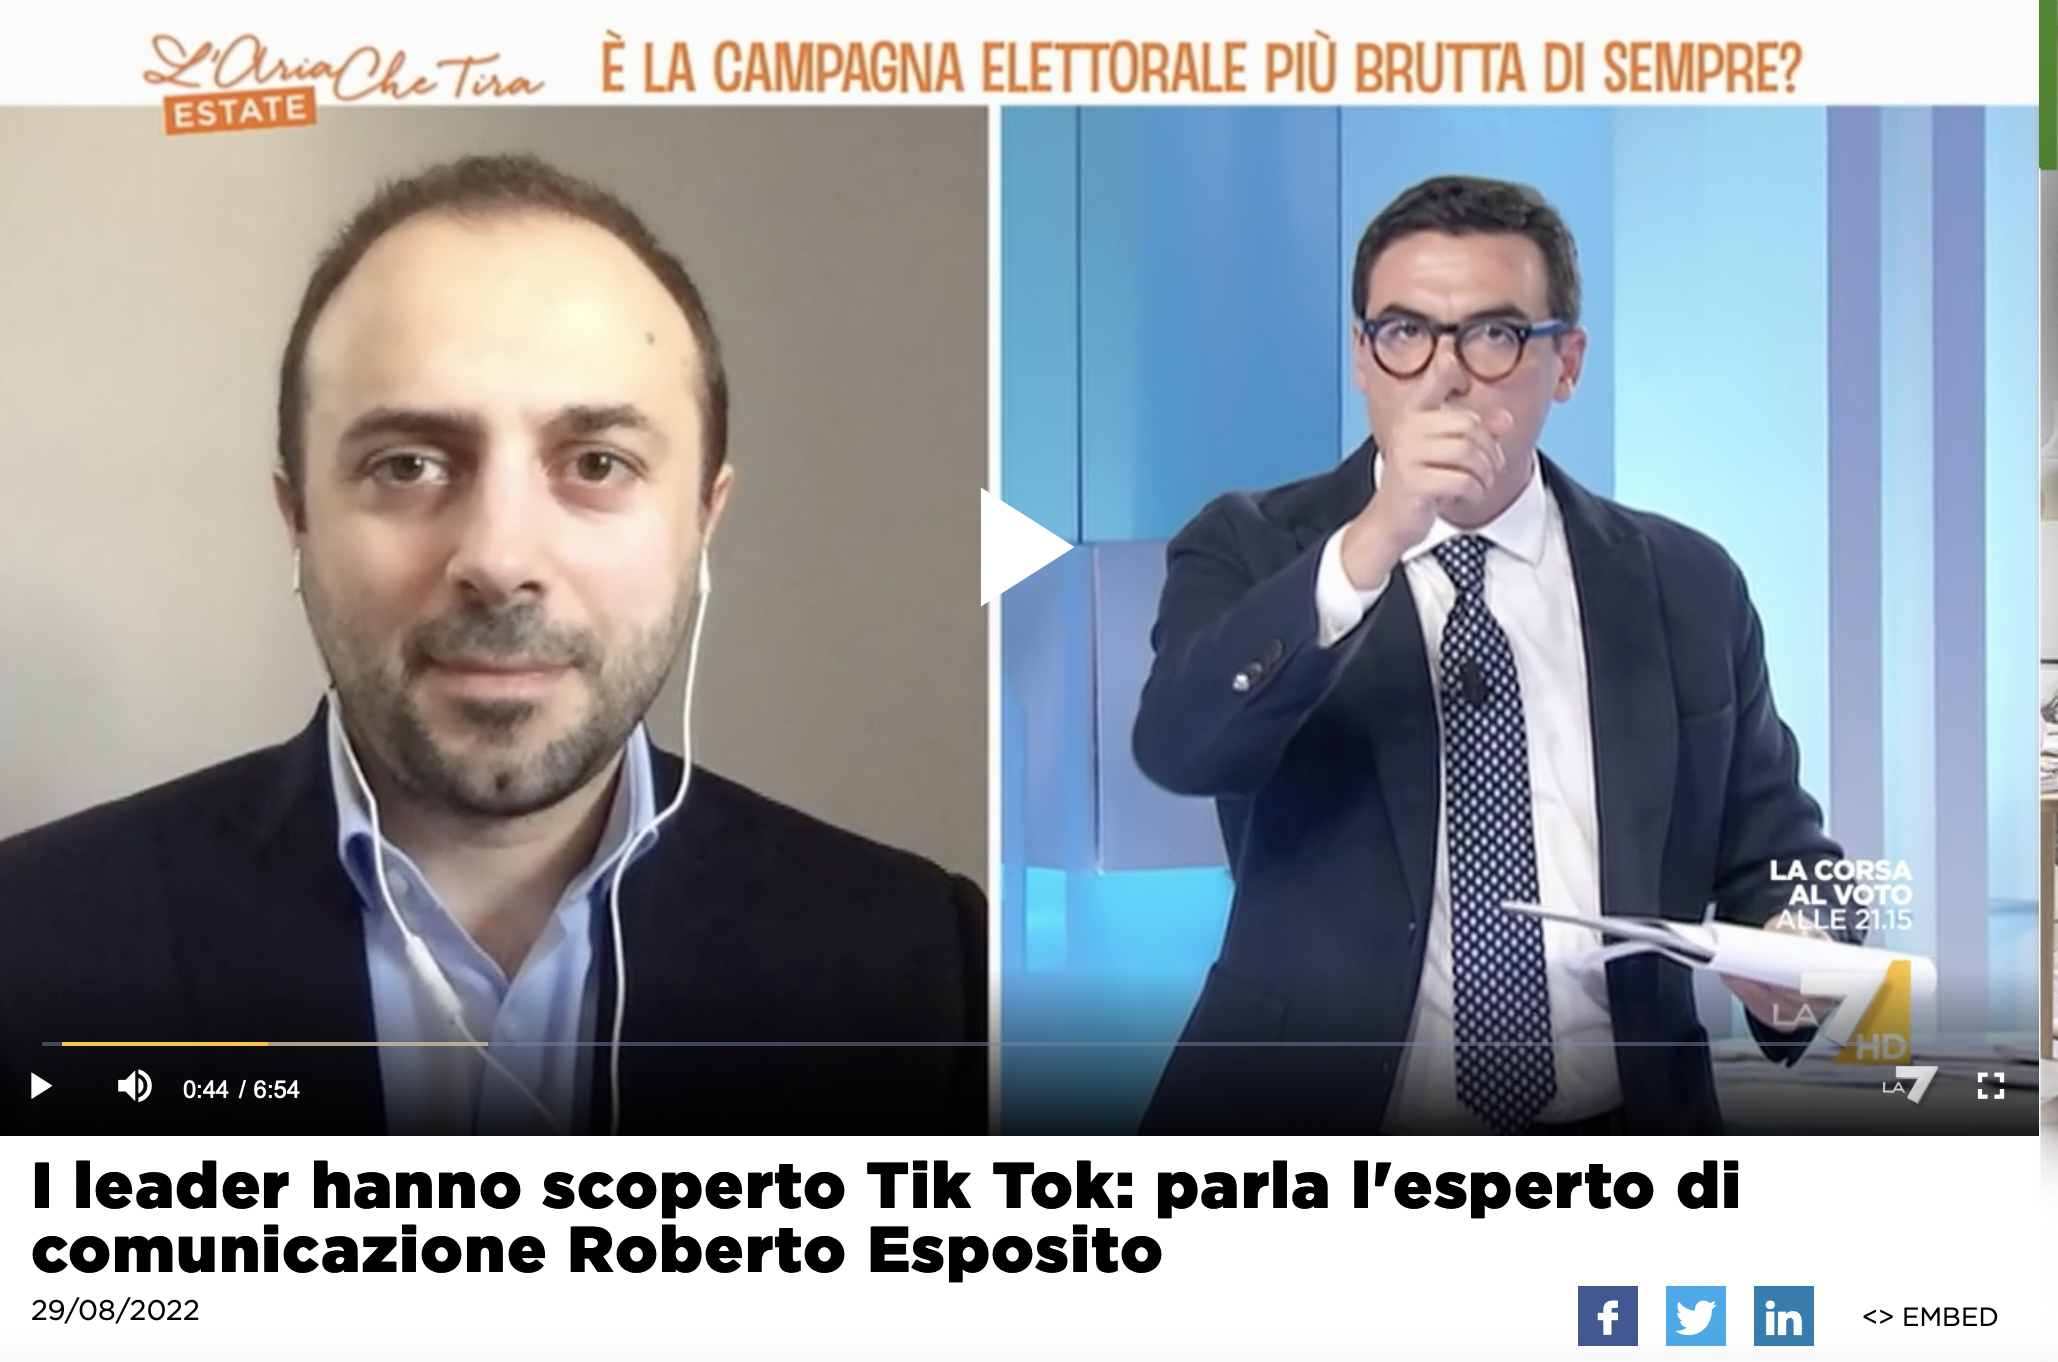 I leader politici su TikTok - Roberto Esposito - L'Aria che Tira